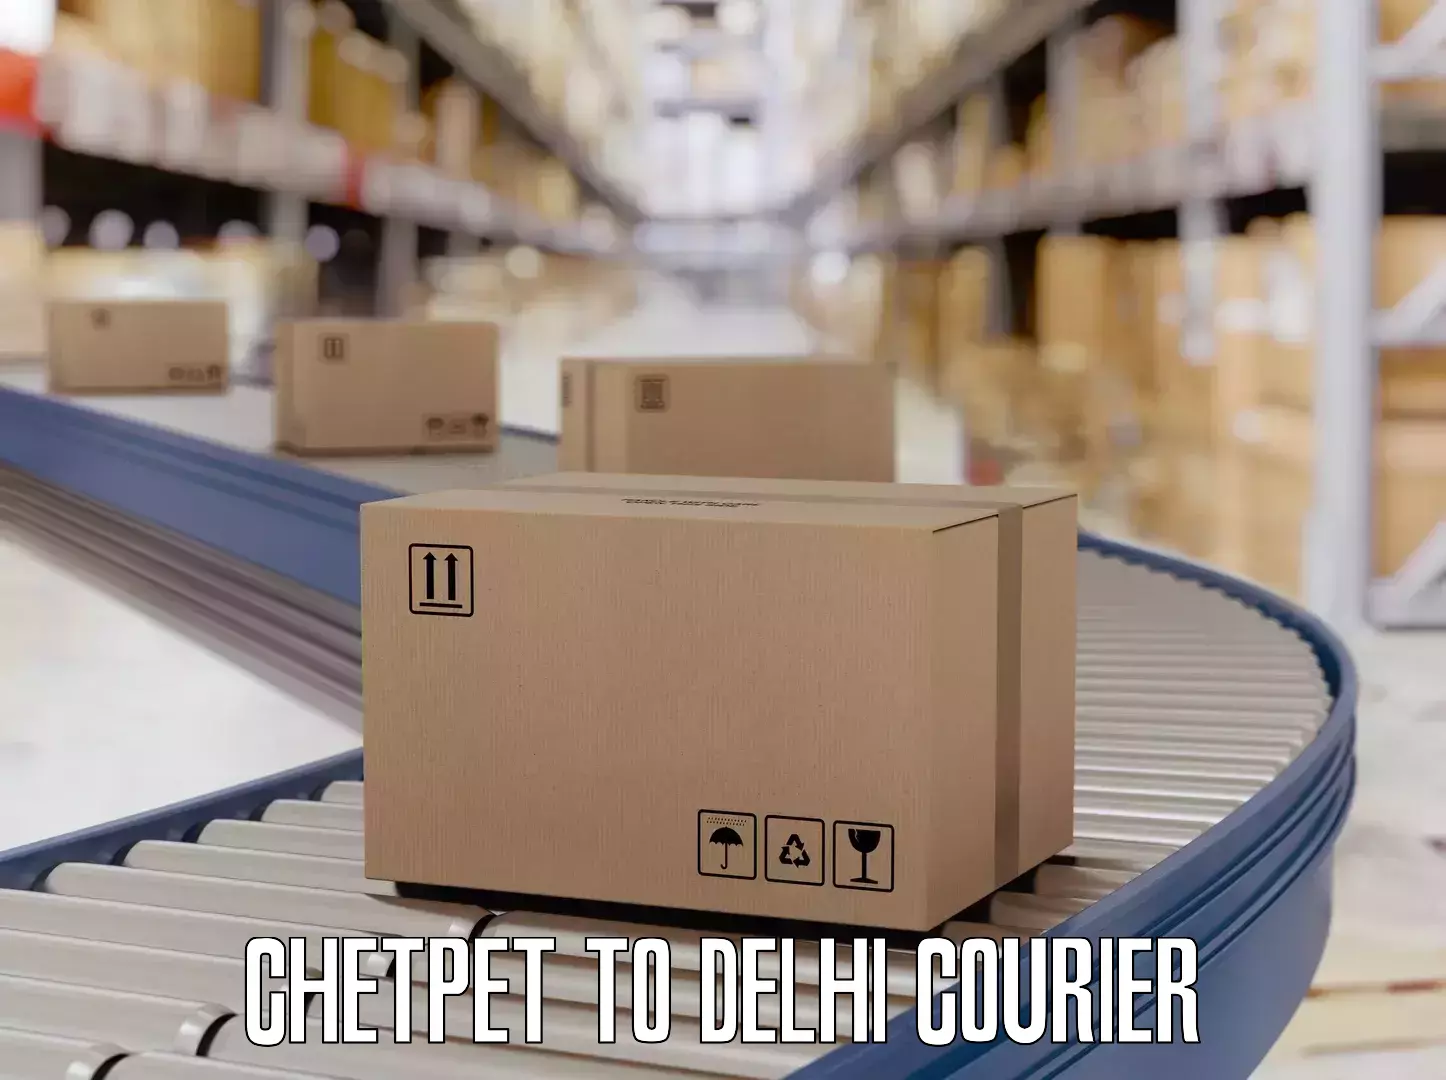 Baggage delivery support Chetpet to Jamia Millia Islamia New Delhi